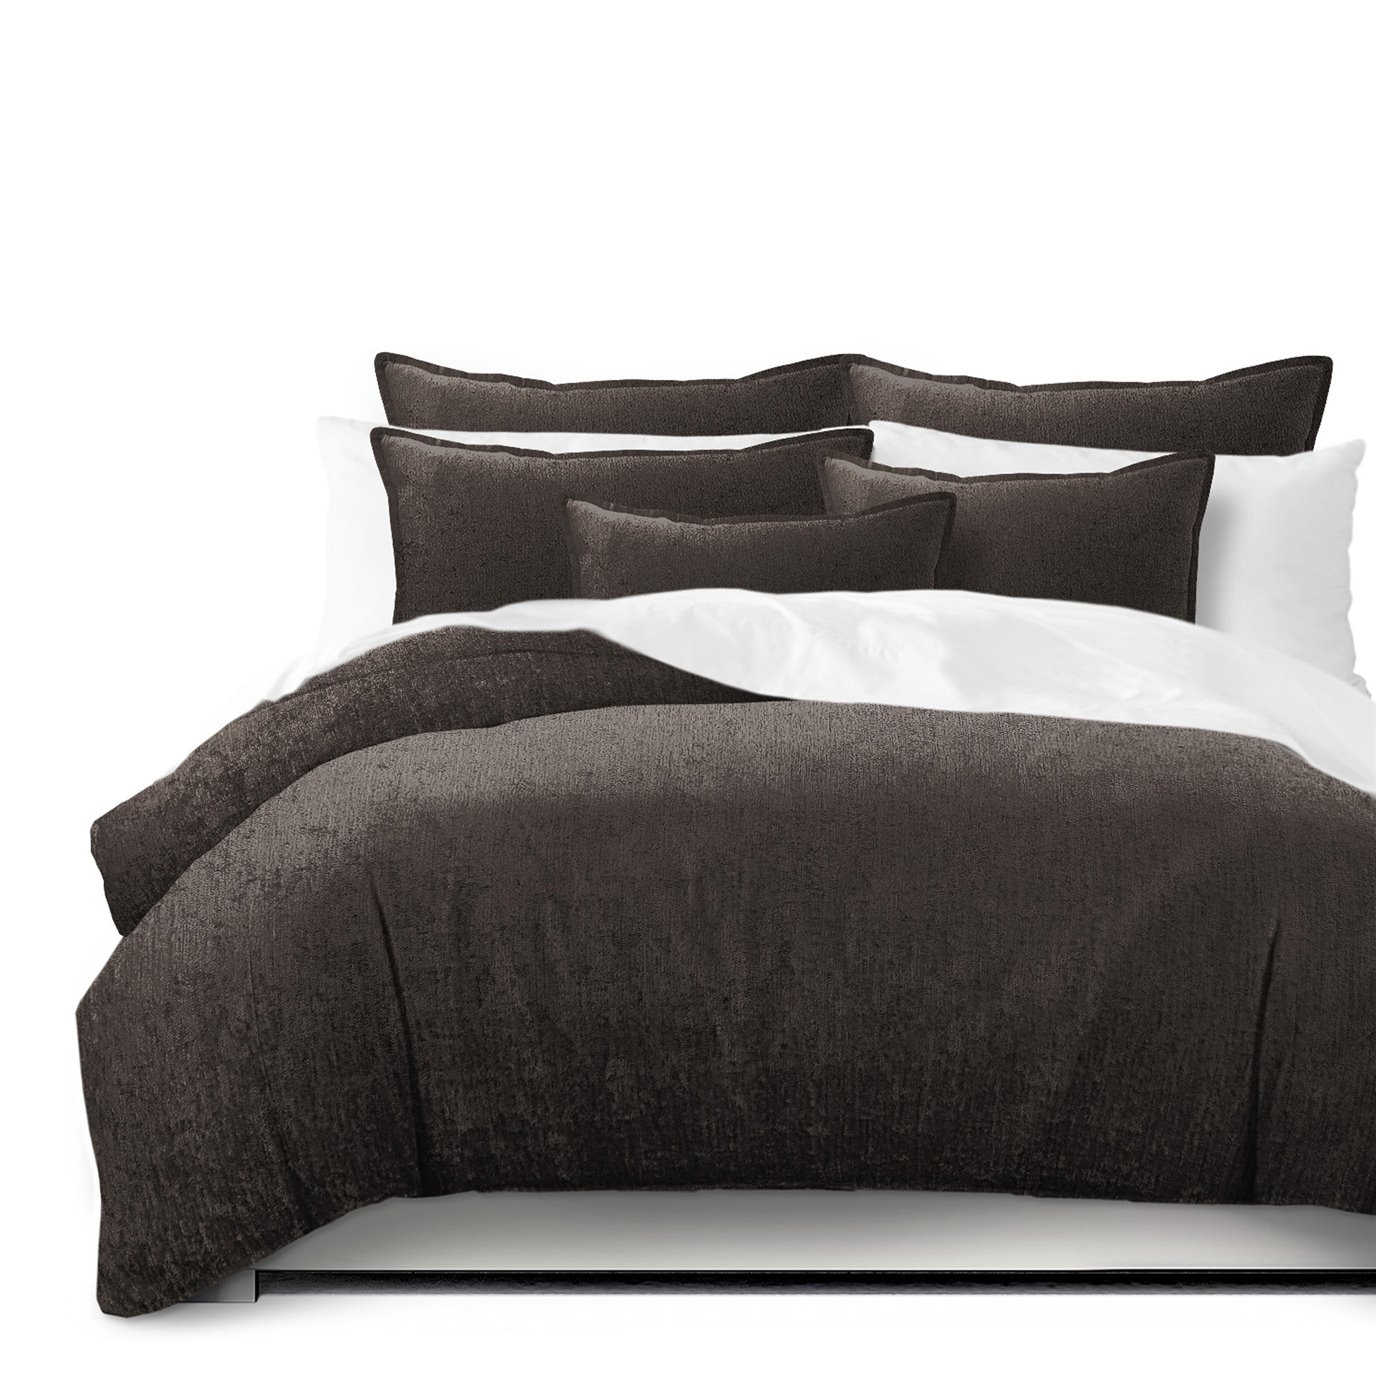 Juno Velvet Chocolate Comforter and Pillow Sham(s) Set - Size Full